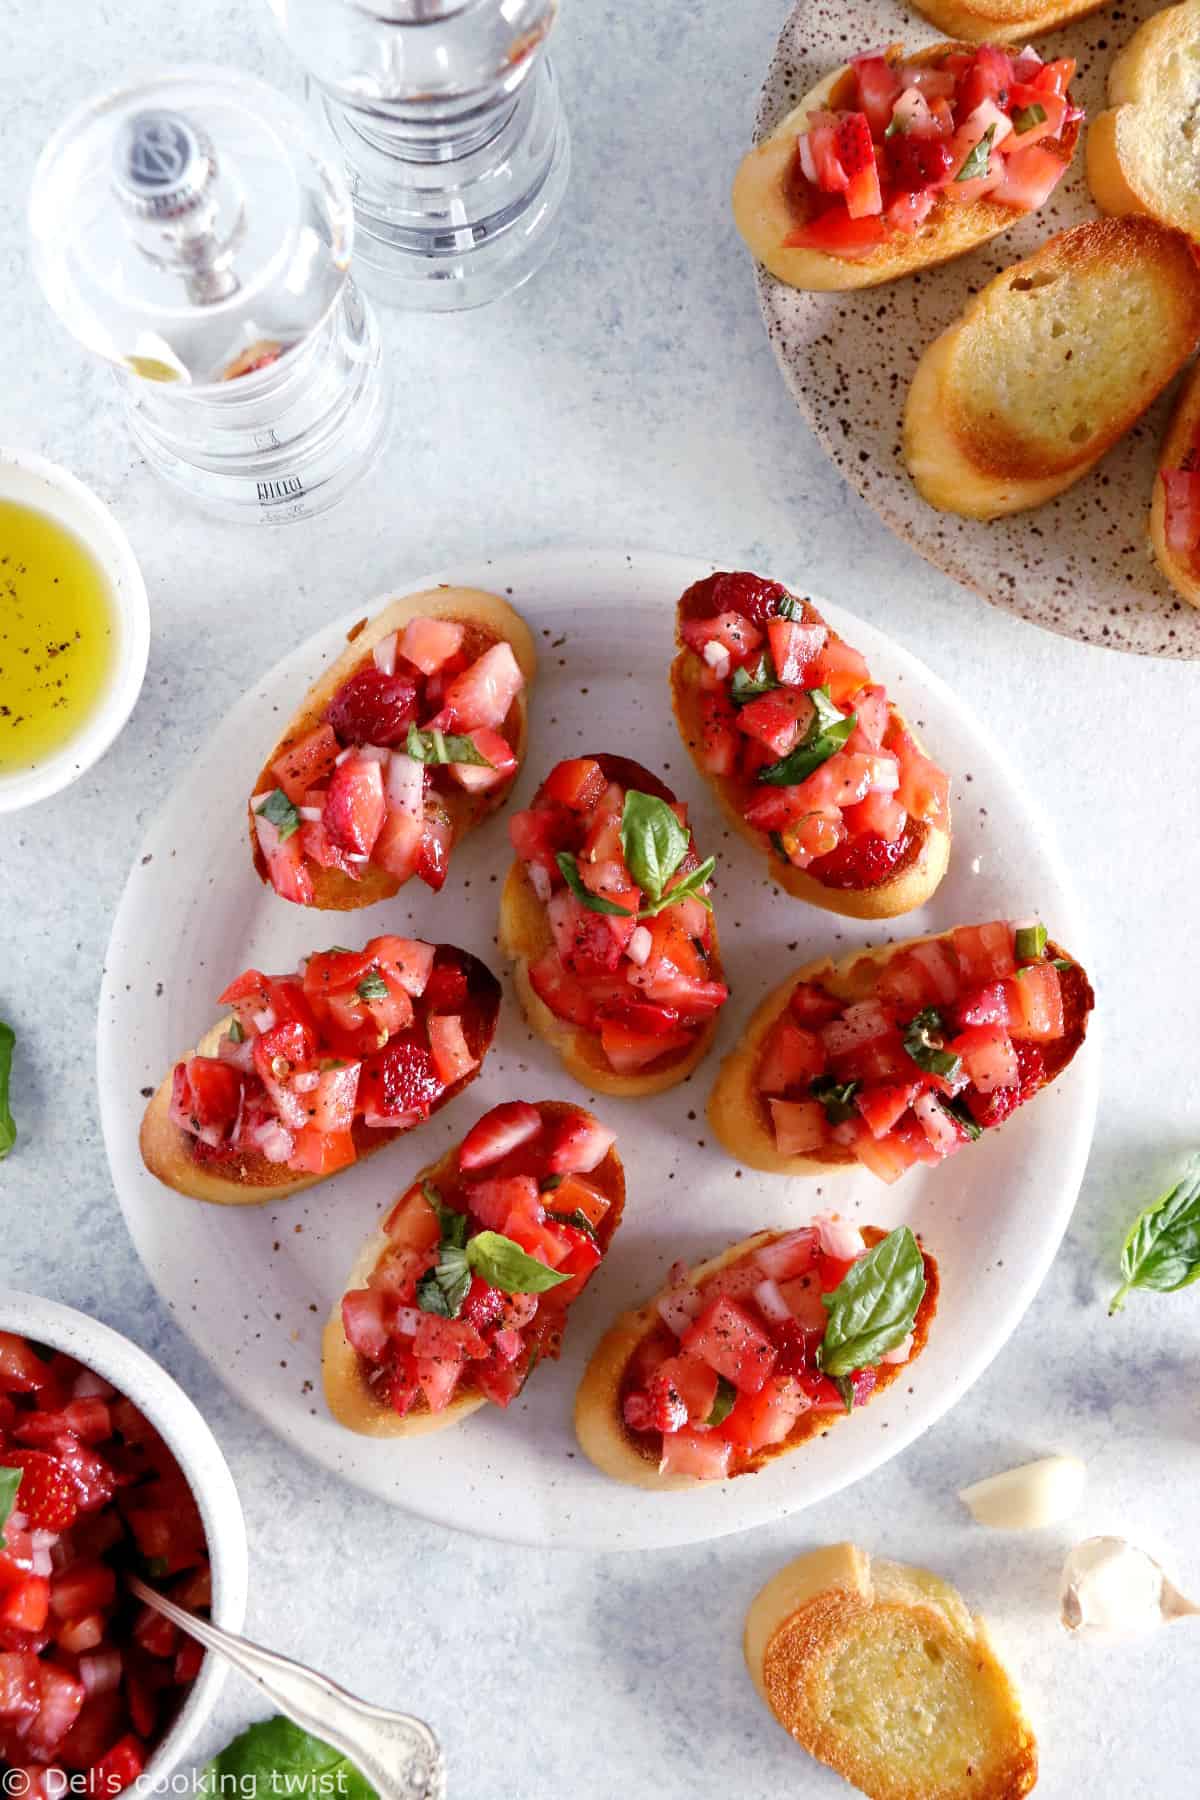 Faciles et rapides à préparer, les bruschetta aux tomates, fraises et basilic sont l'antipasti par excellence à servir pour les apéritifs entre amis.